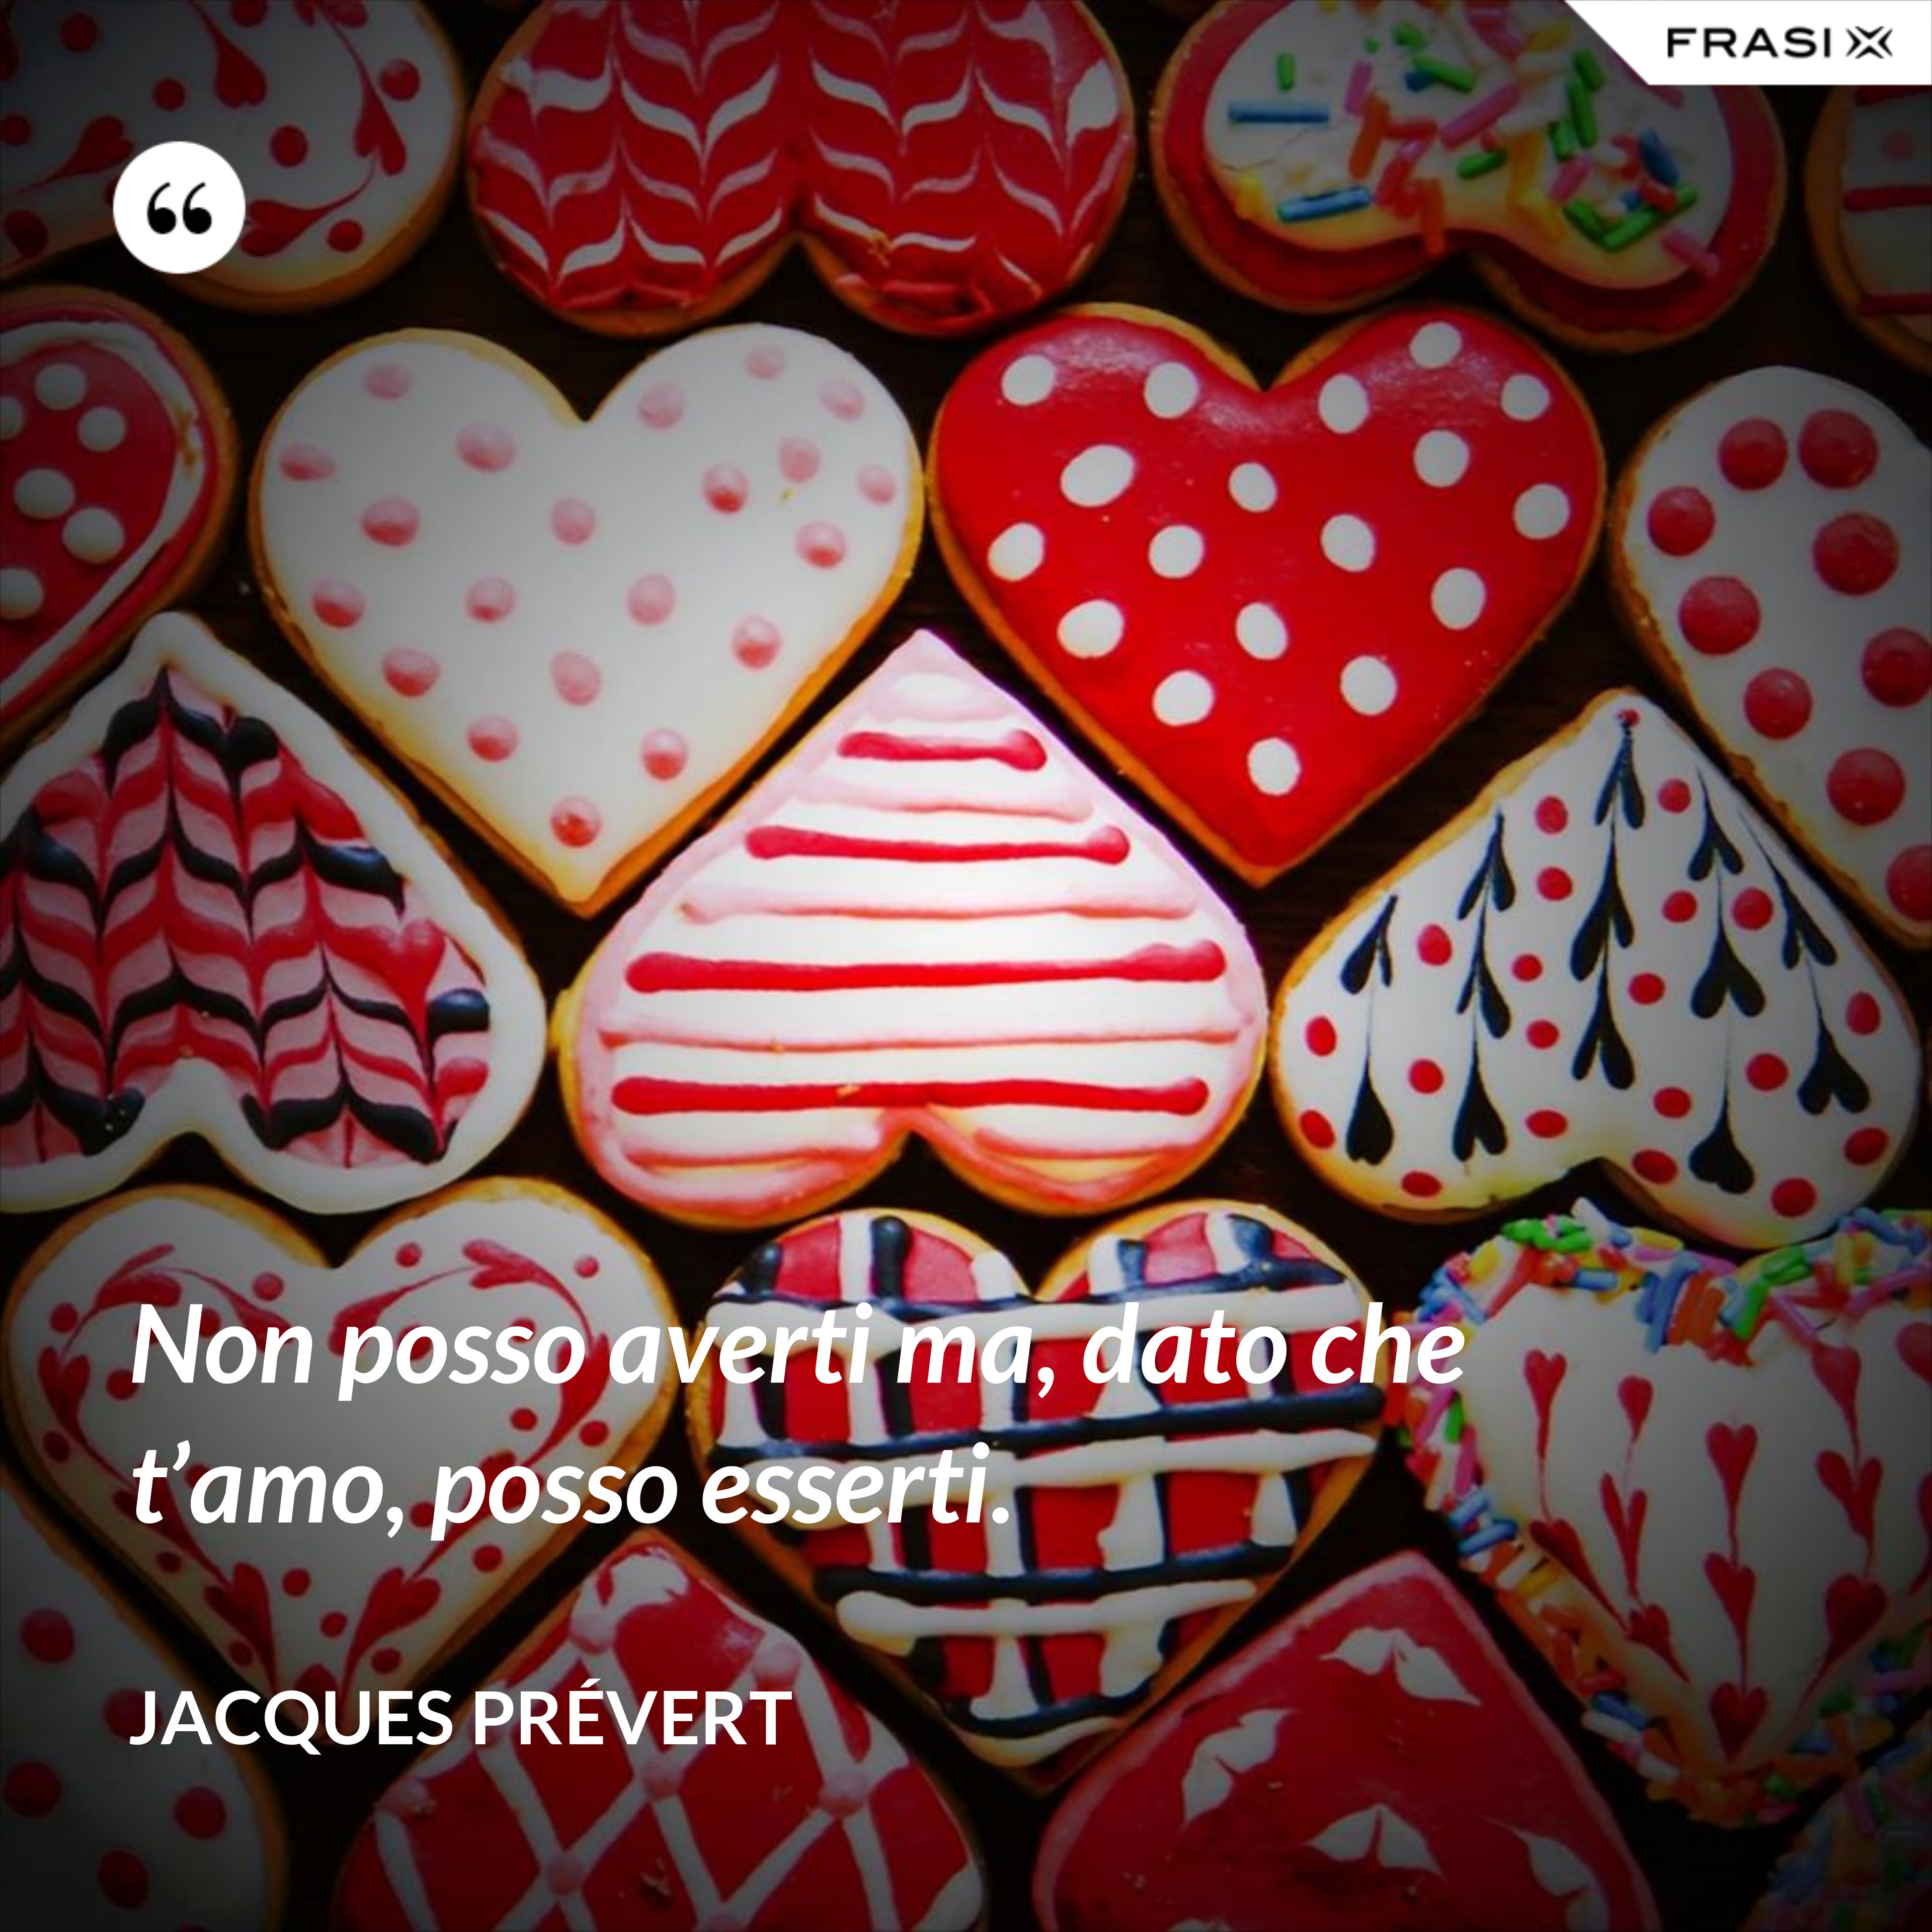 Non posso averti ma, dato che t’amo, posso esserti. - Jacques Prévert